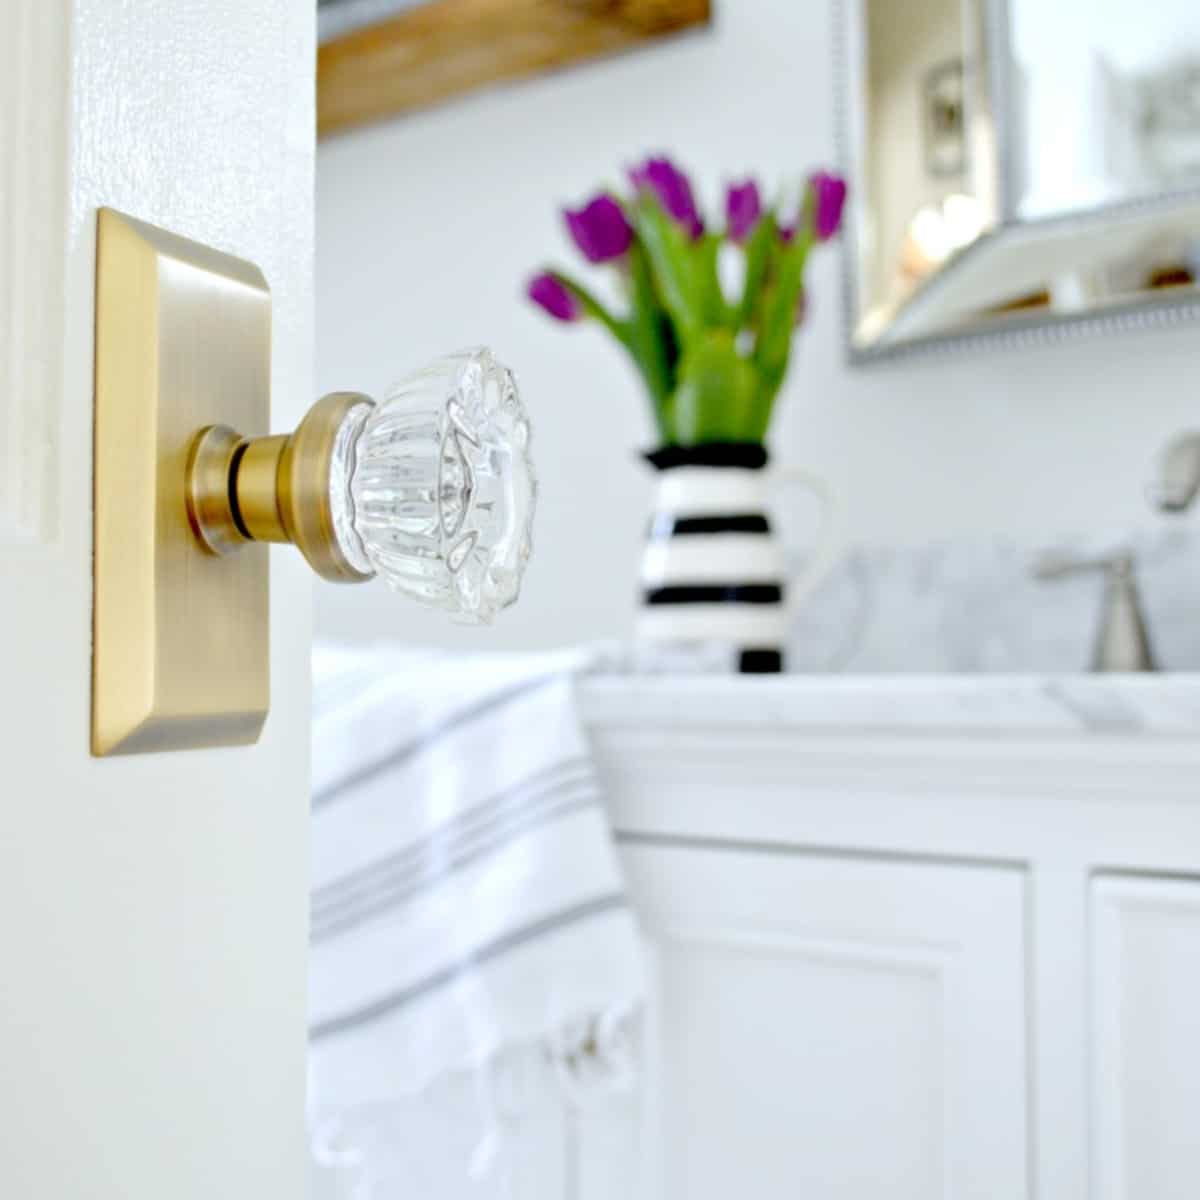 brass and glass door knob on a bathroom door